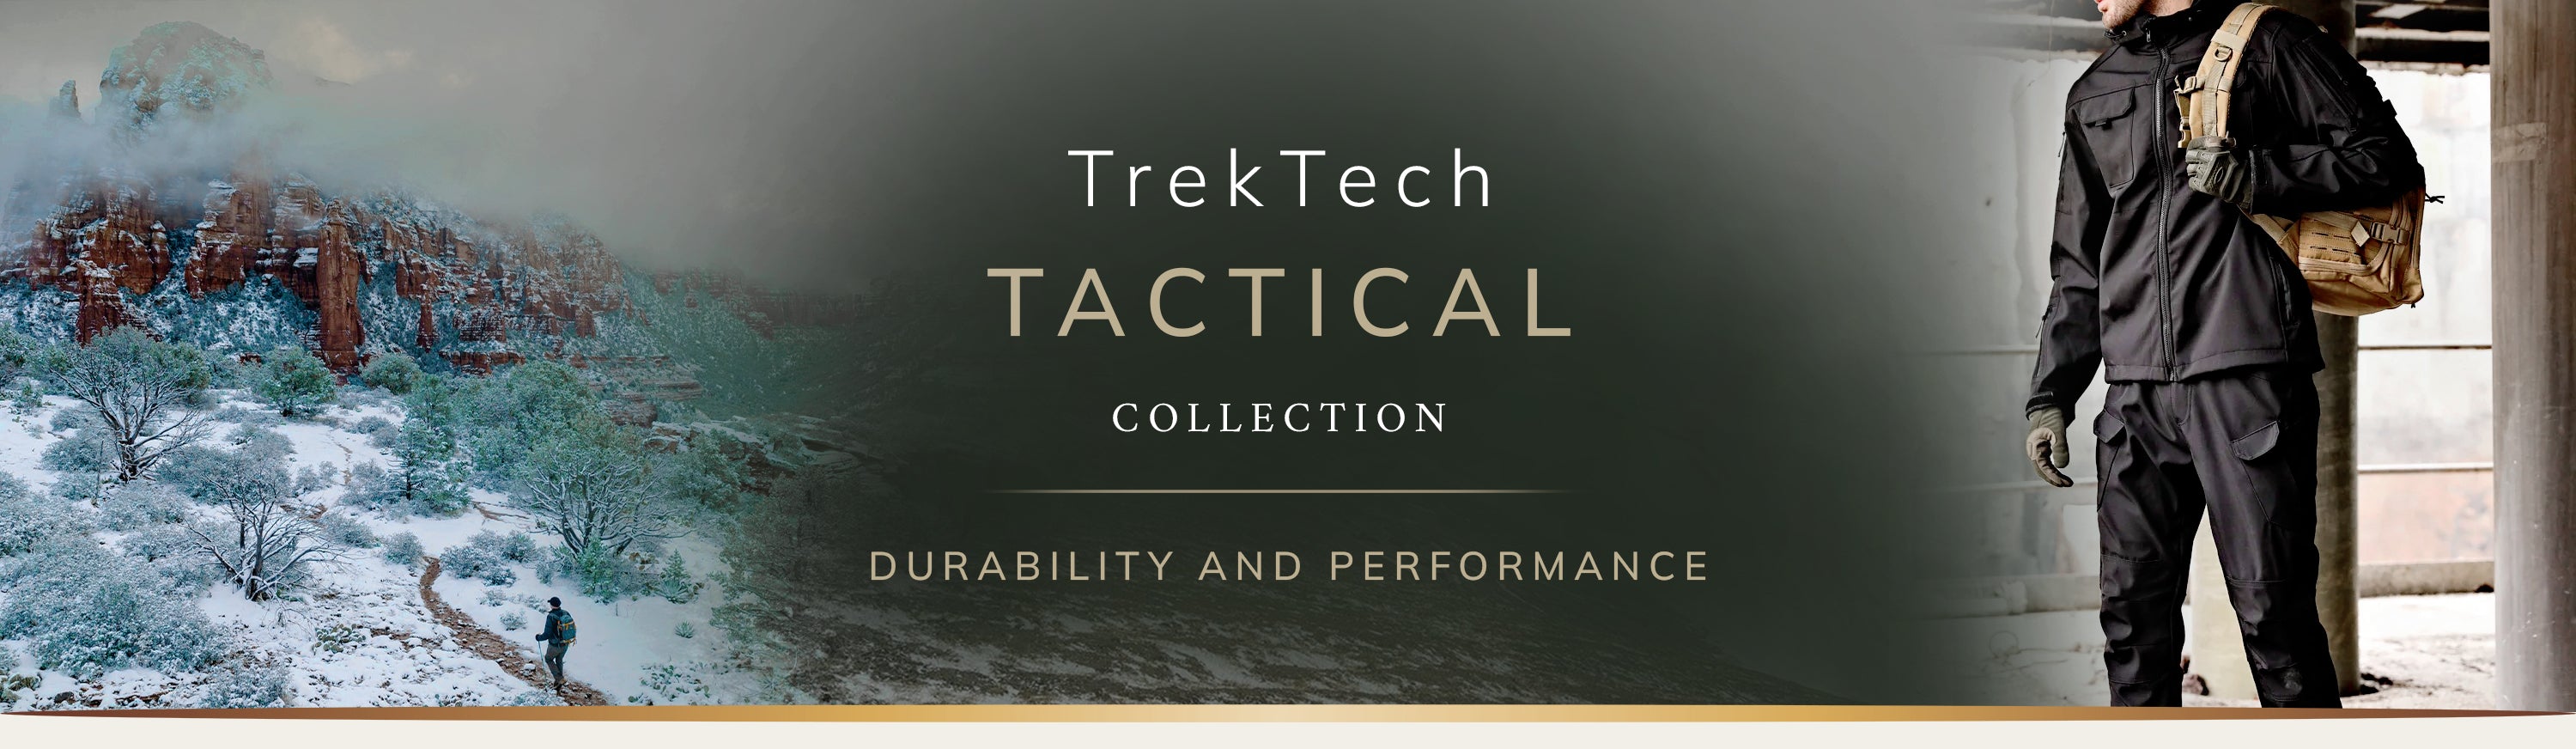 TrekTech Tactical Collection.jpg__PID:6d6d1a66-b695-471d-8276-80e7e34cb854